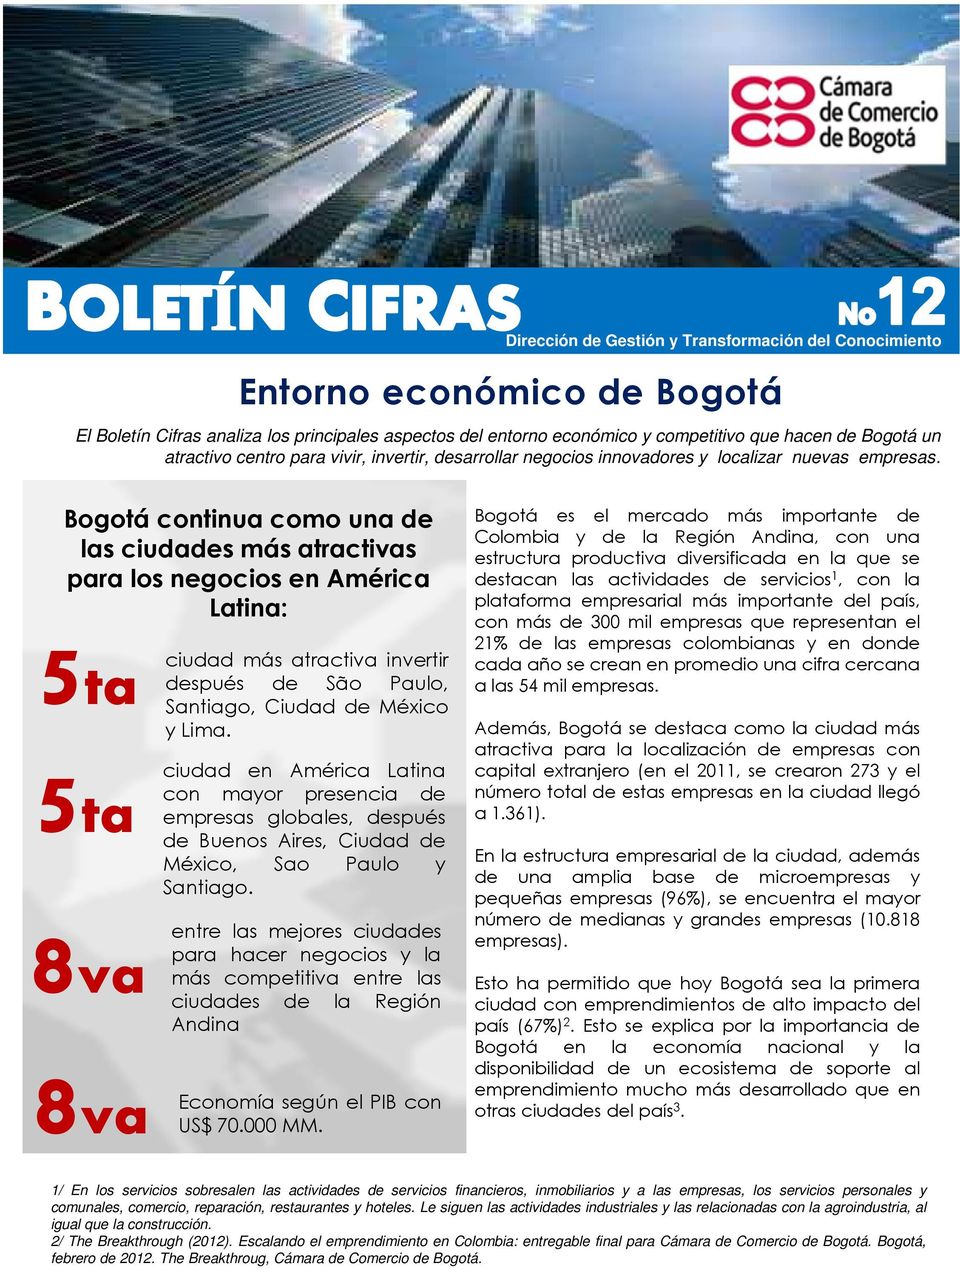 Bogotá continua como una de las ciudades más atractivas para los negocios en América Latina: 5ta ciudad más atractiva invertir después de São Paulo, Santiago, Ciudad de México ylima.